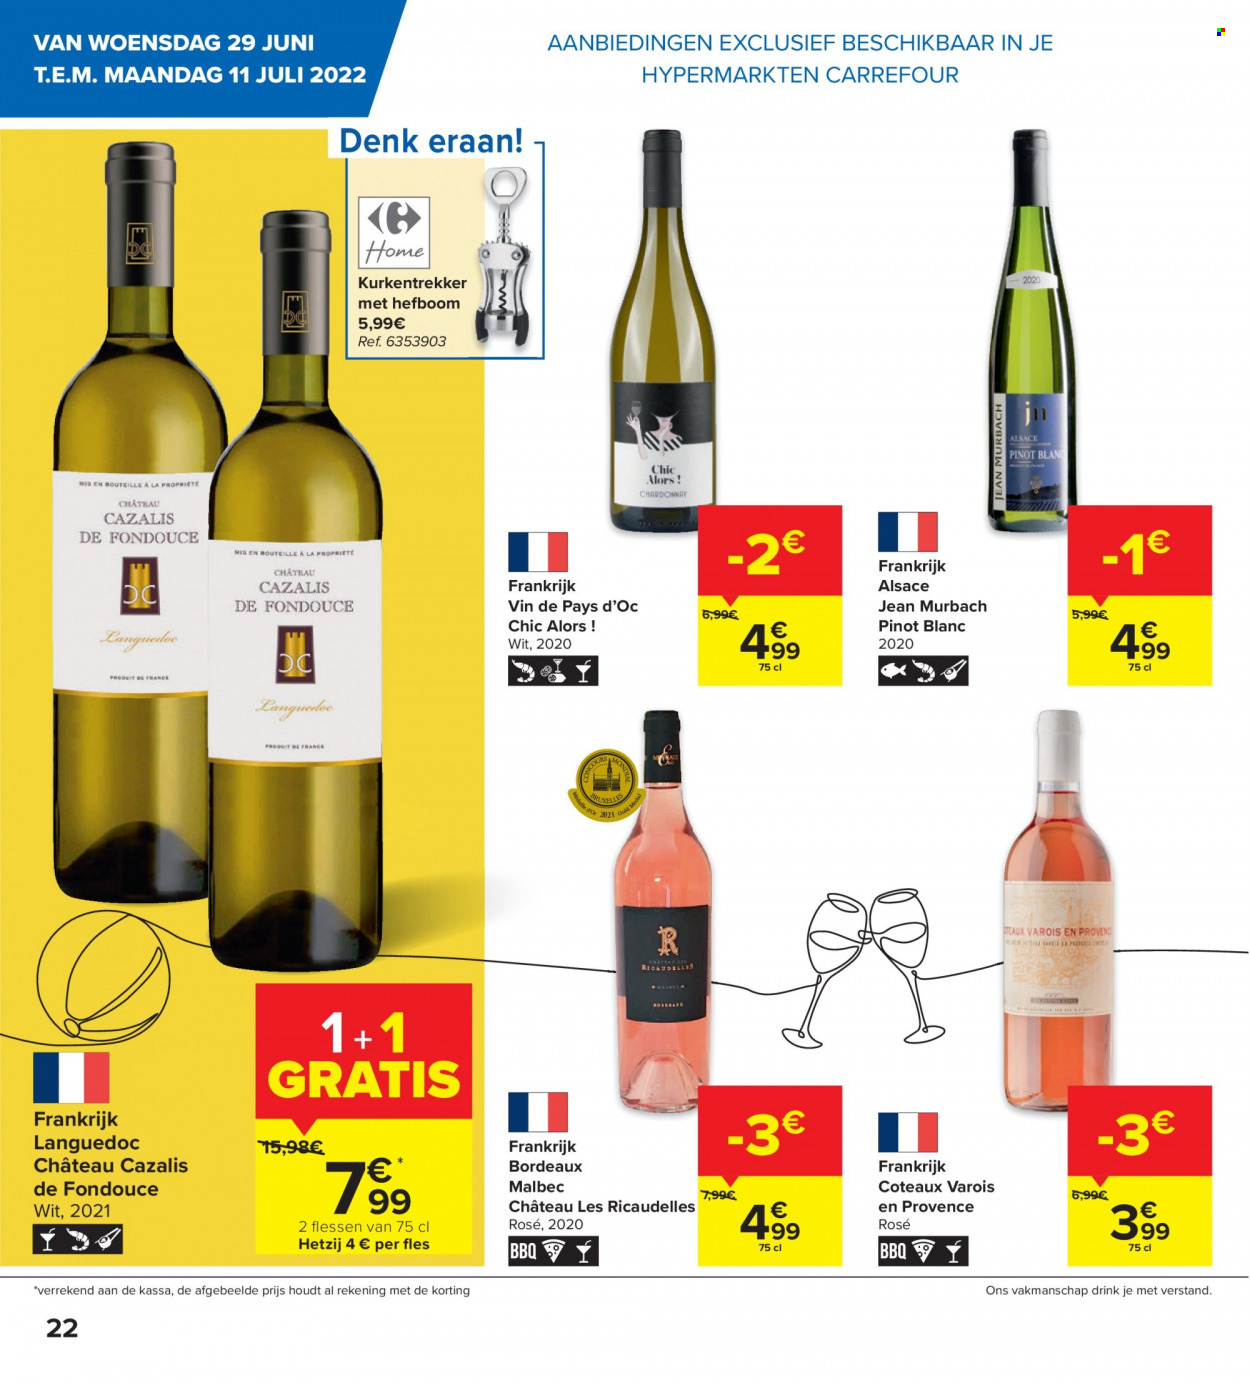 thumbnail - Catalogue Carrefour hypermarkt - 29/06/2022 - 11/07/2022 - Produits soldés - vin blanc, vin rouge, vin, Bordeaux, alcool, Pinot Blanc, jeans. Page 2.